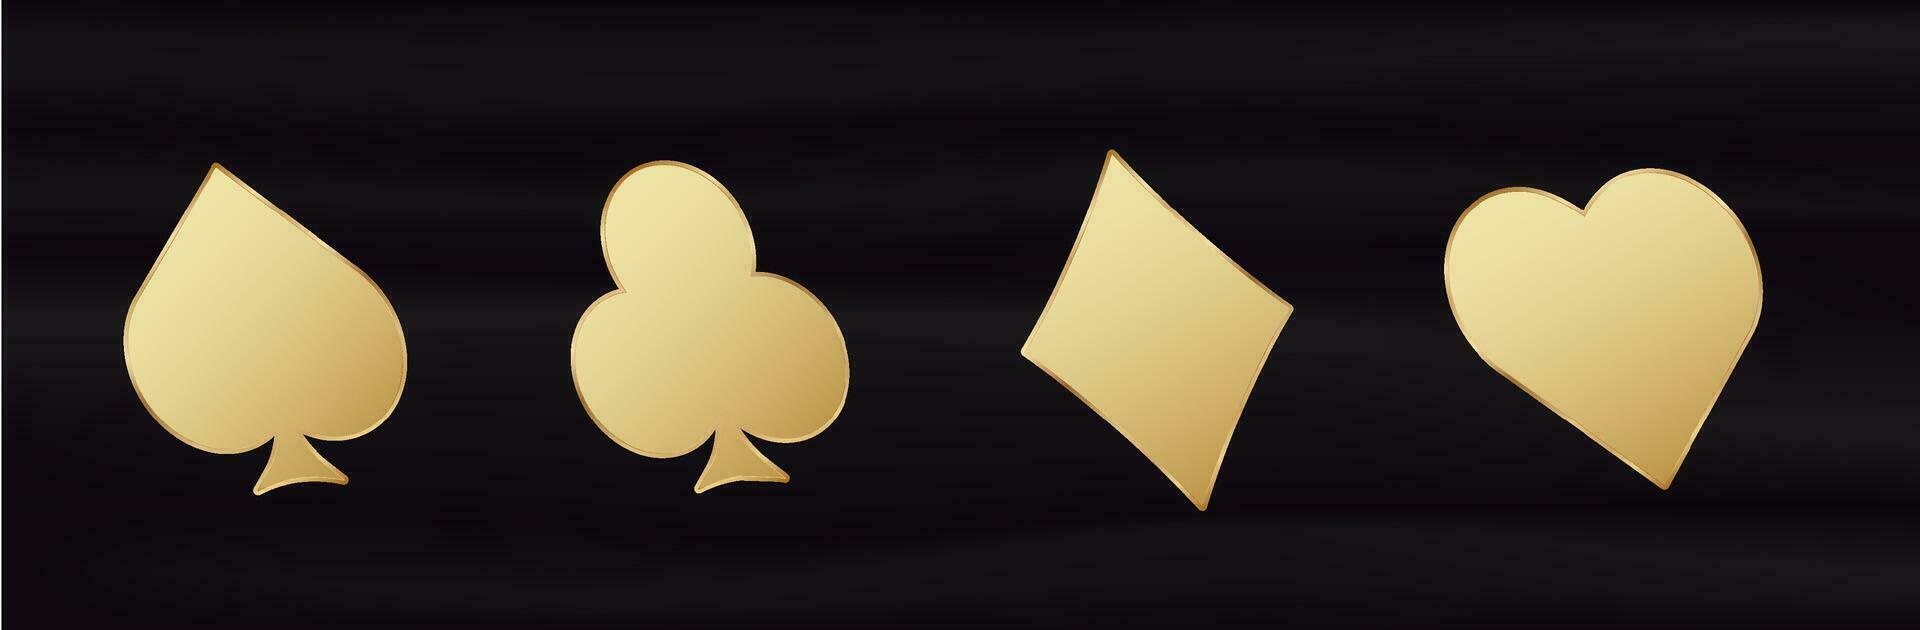 d'oro carta 3d abiti. giallo pendenza simbolo di gioco d'azzardo fortuna nel poker e riuscito gioco nel casinò con manganello e scommesse vettore